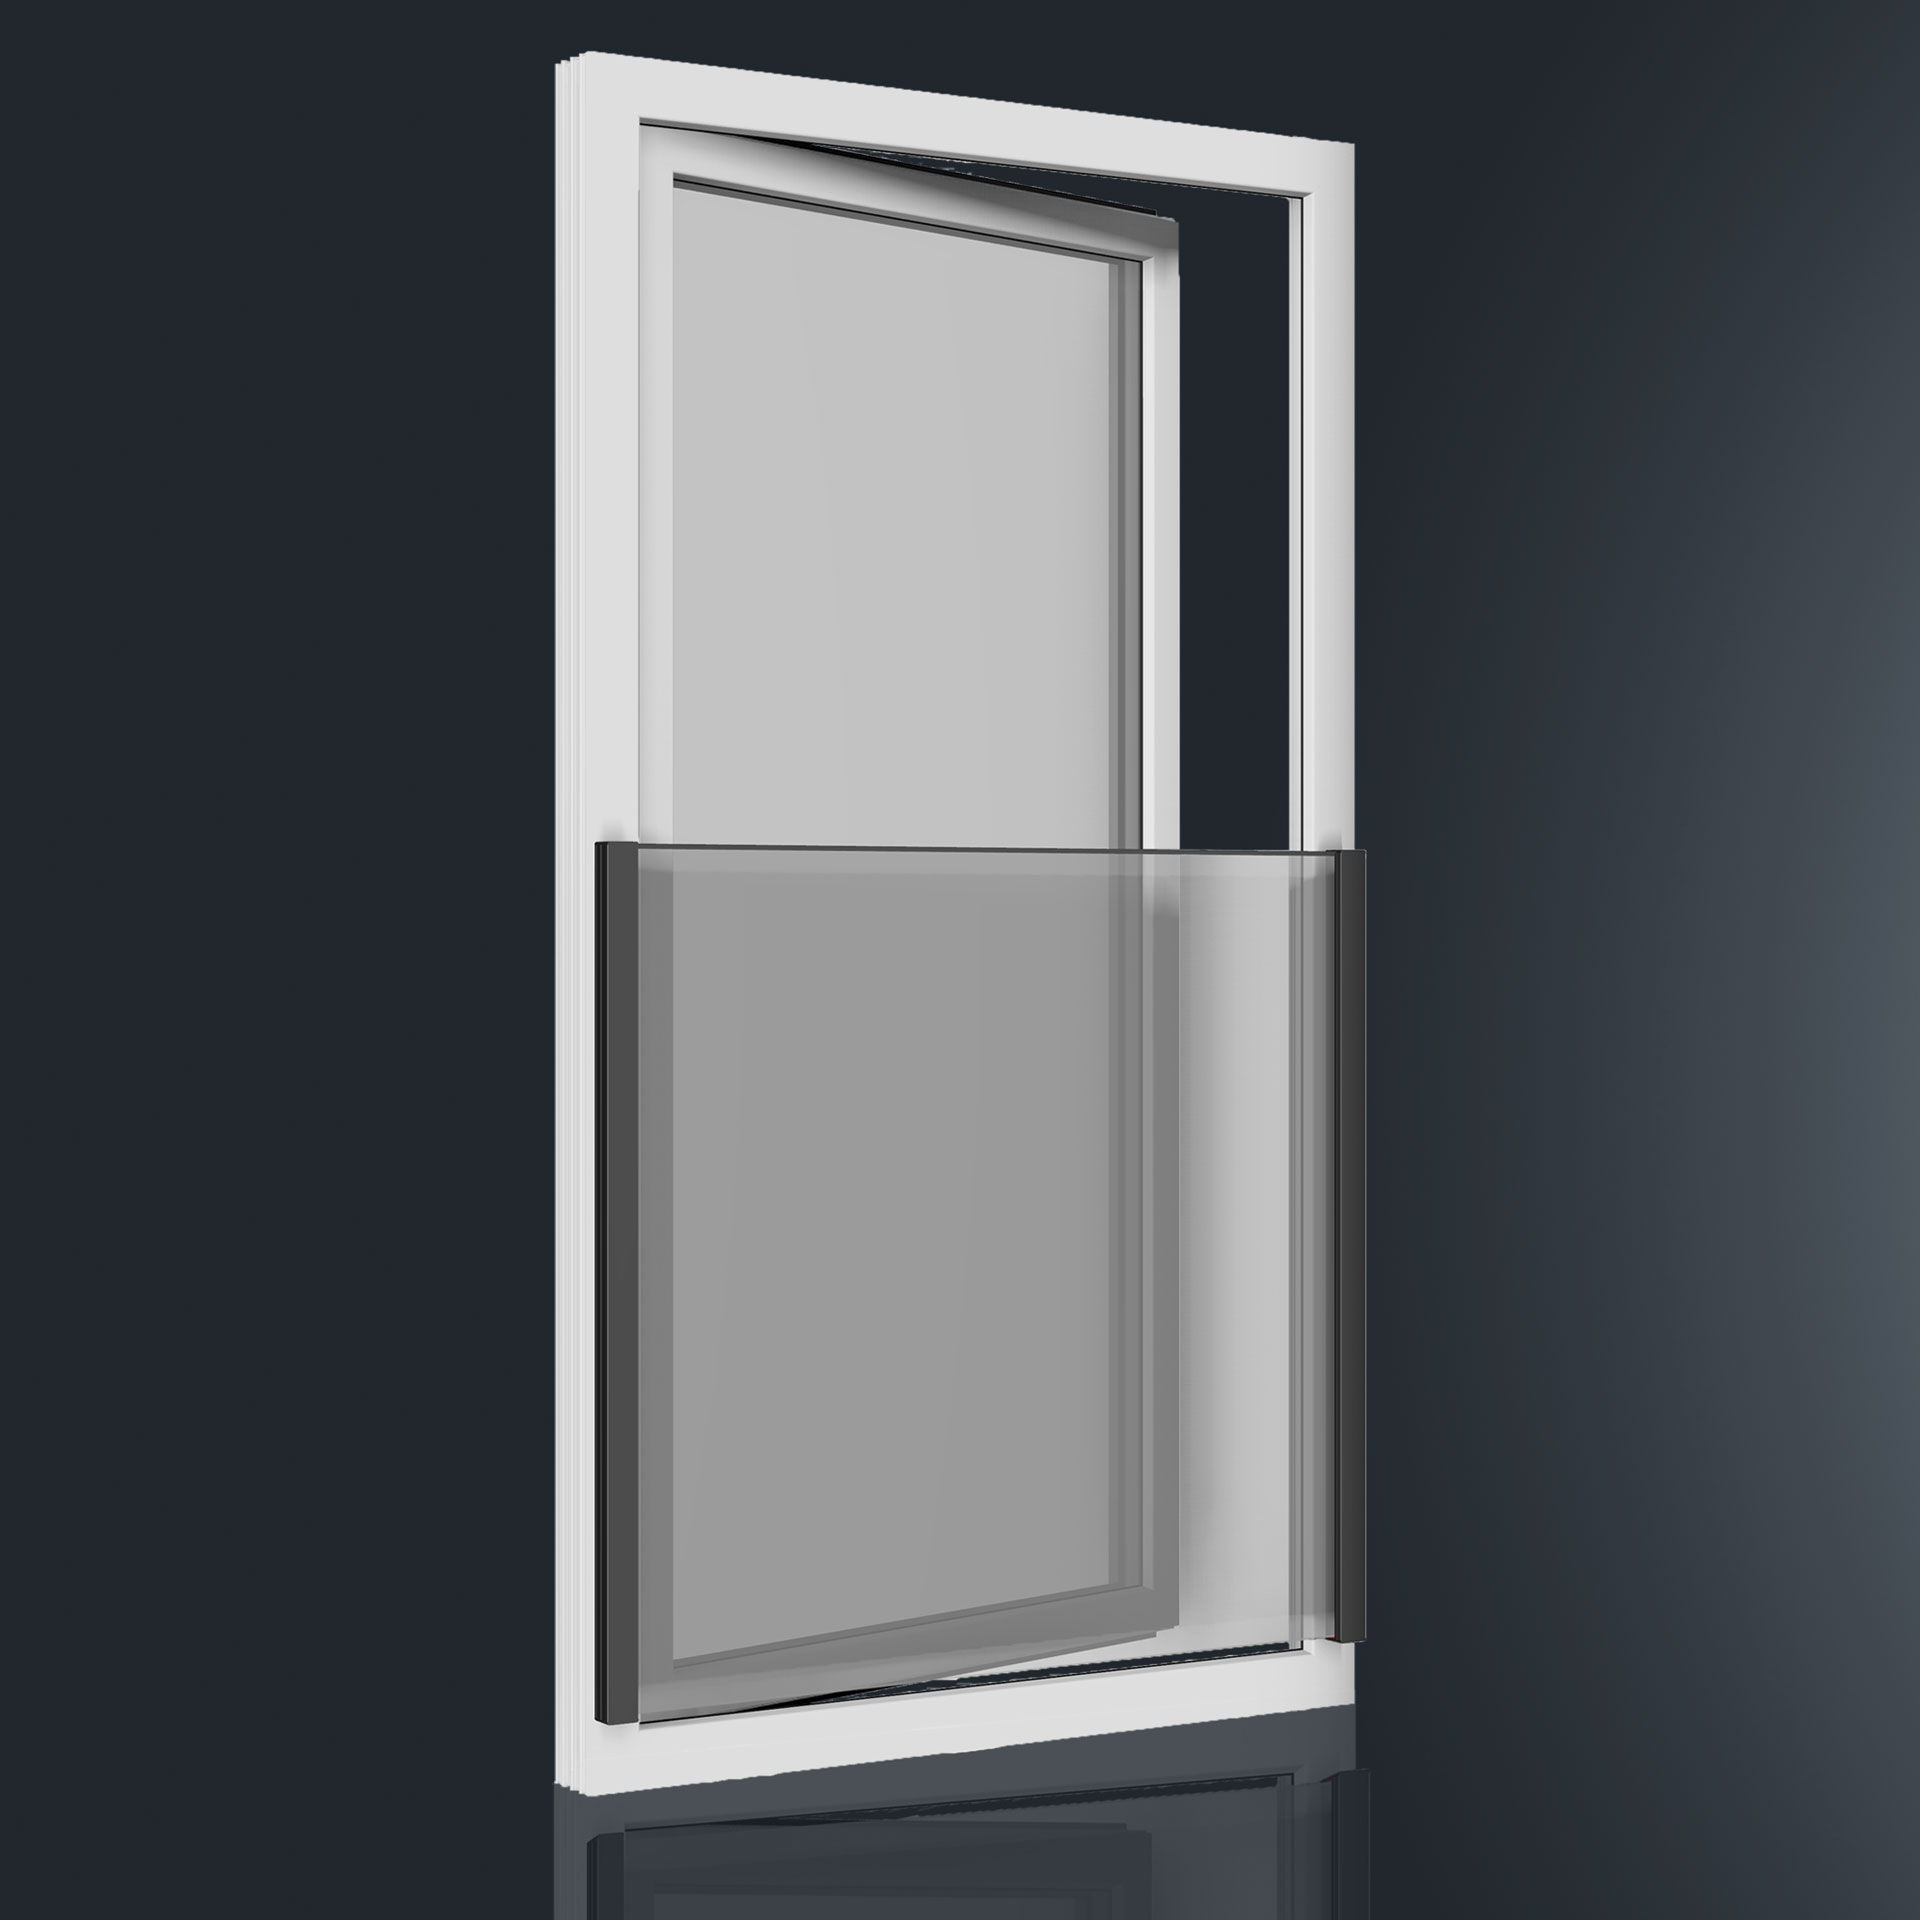 Die aufliegende Absturzsicherung GUTMANN FPS für bodentiefe Fenster kann auf alle gängigen Rahmenmaterialien, wie Holz, Kunststoff oder Aluminium, montiert werden. Es sind keine sperrigen Zusatz- und Sicherheitskonstruktionen nötig.